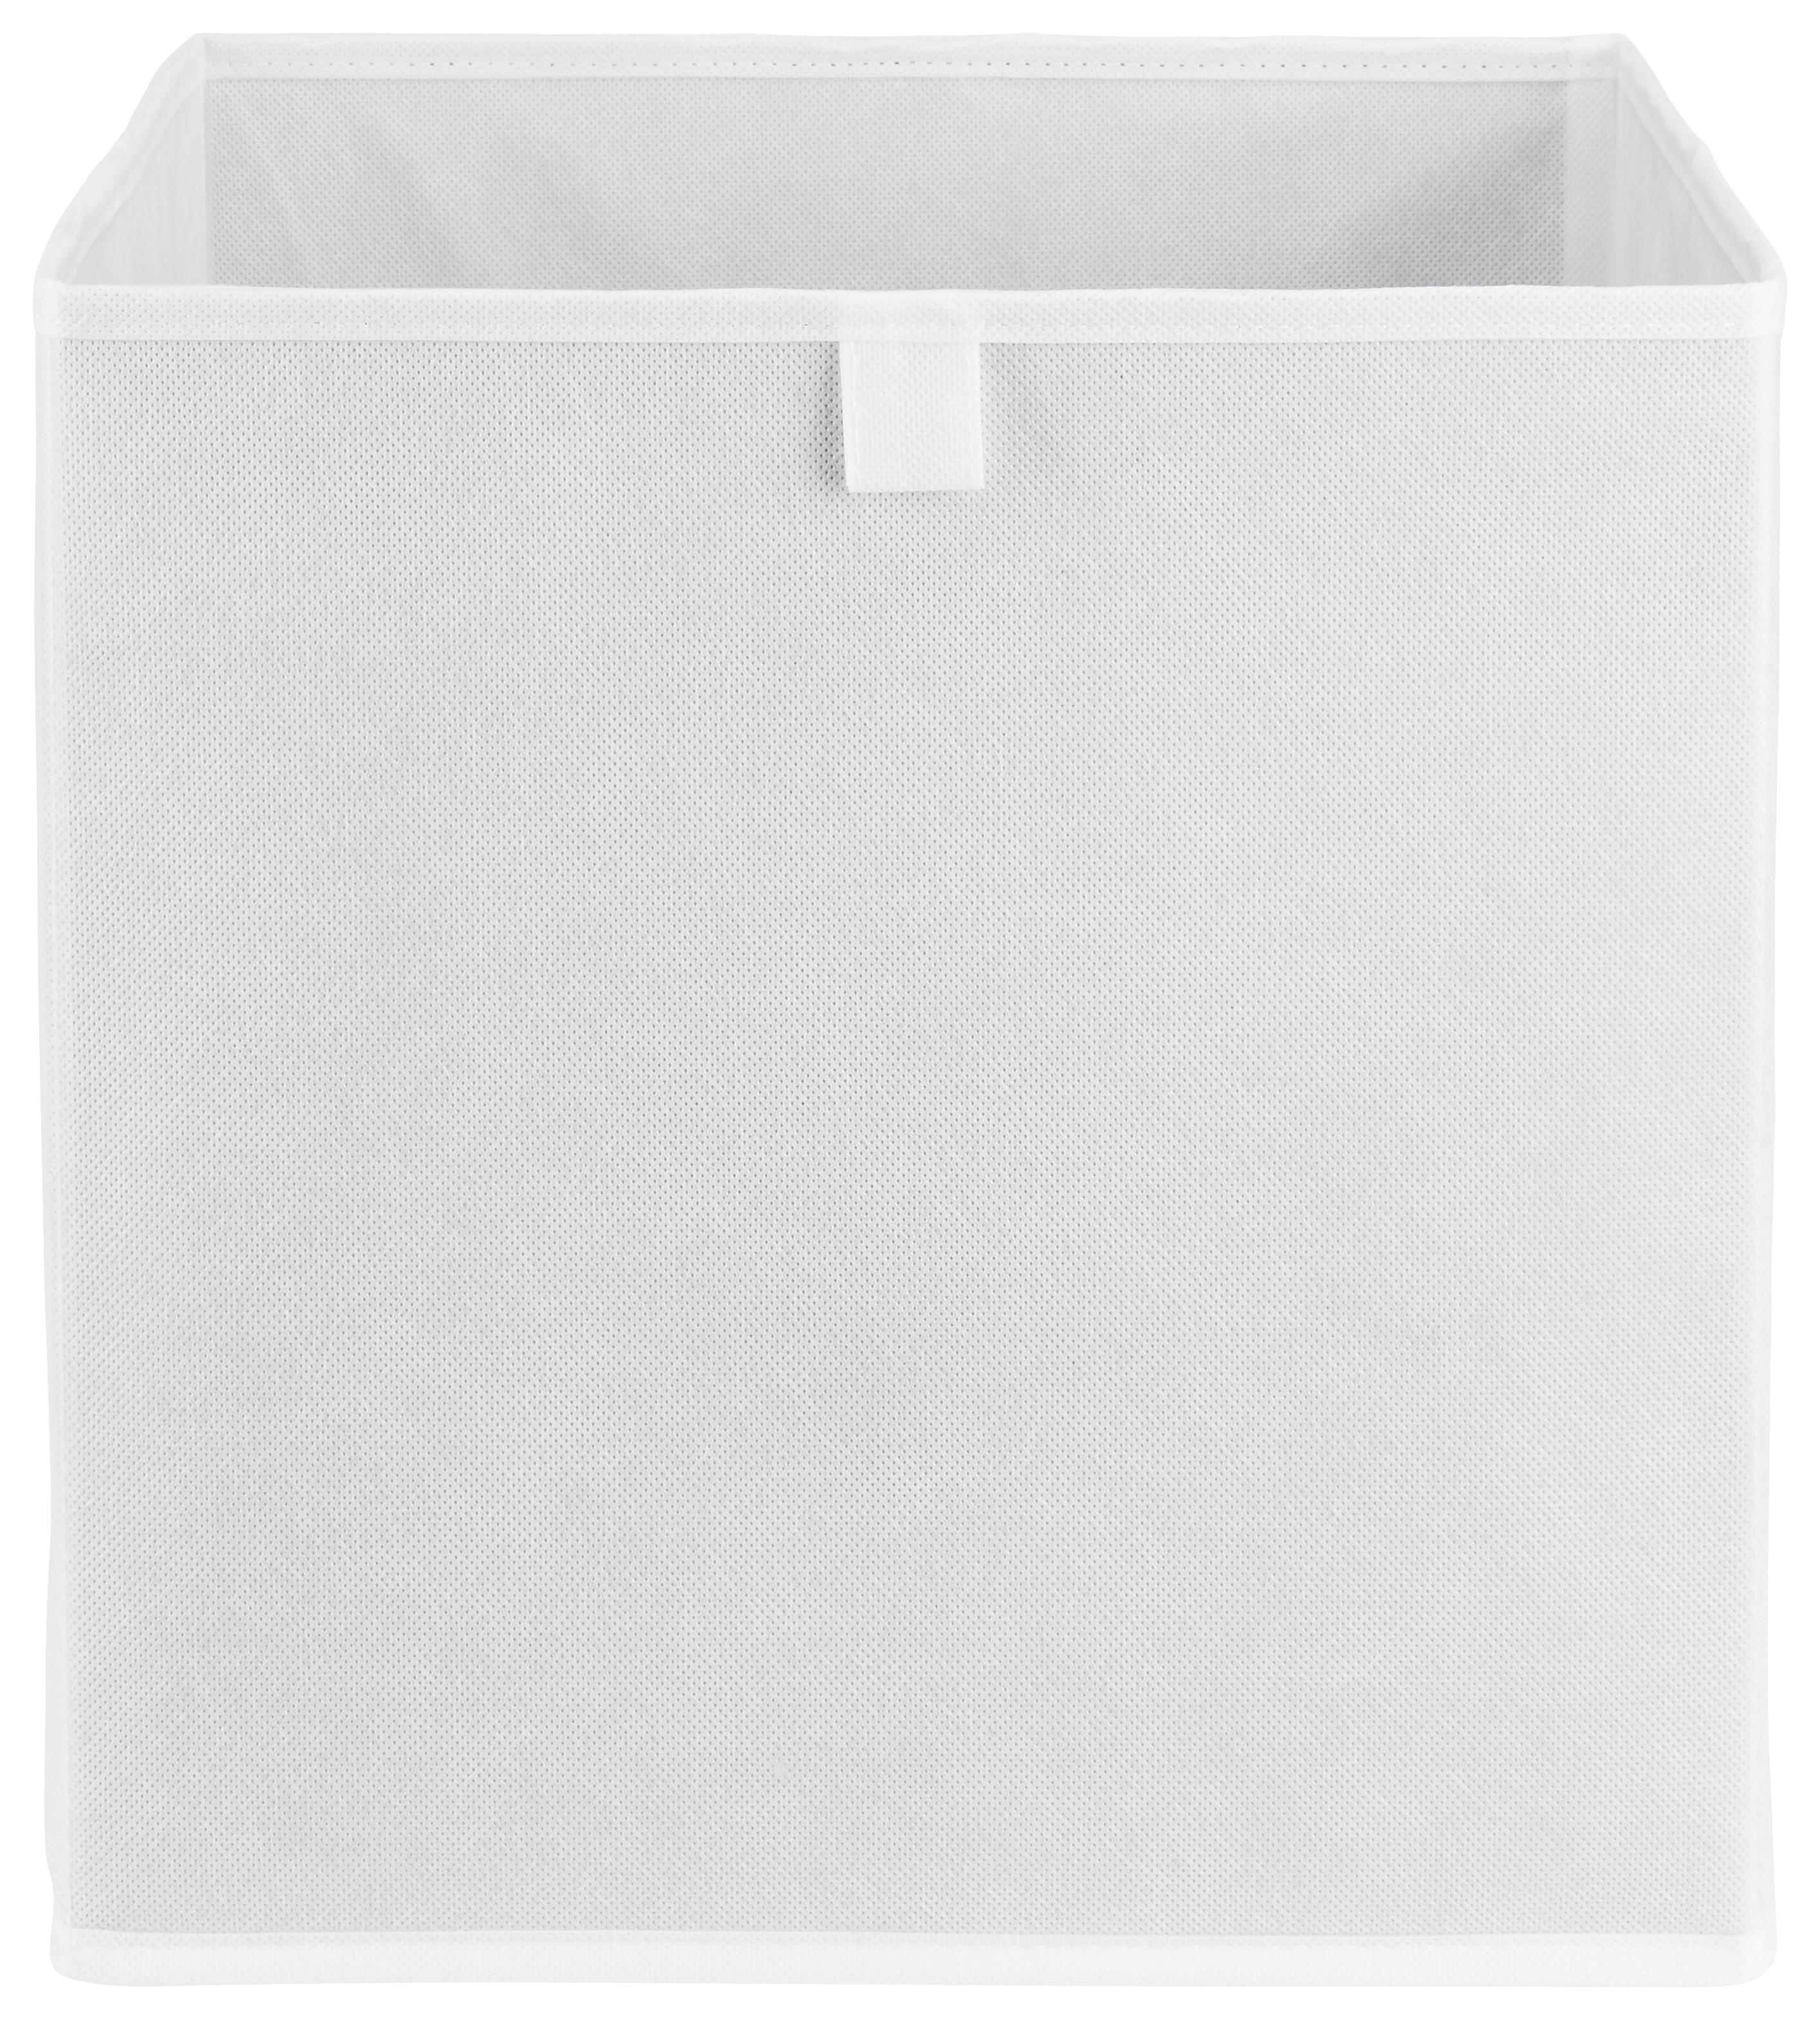 Aufbewahrungsbox Nino in Weiß - Weiß, MODERN, Karton/Textil (32/32/32cm) - Modern Living